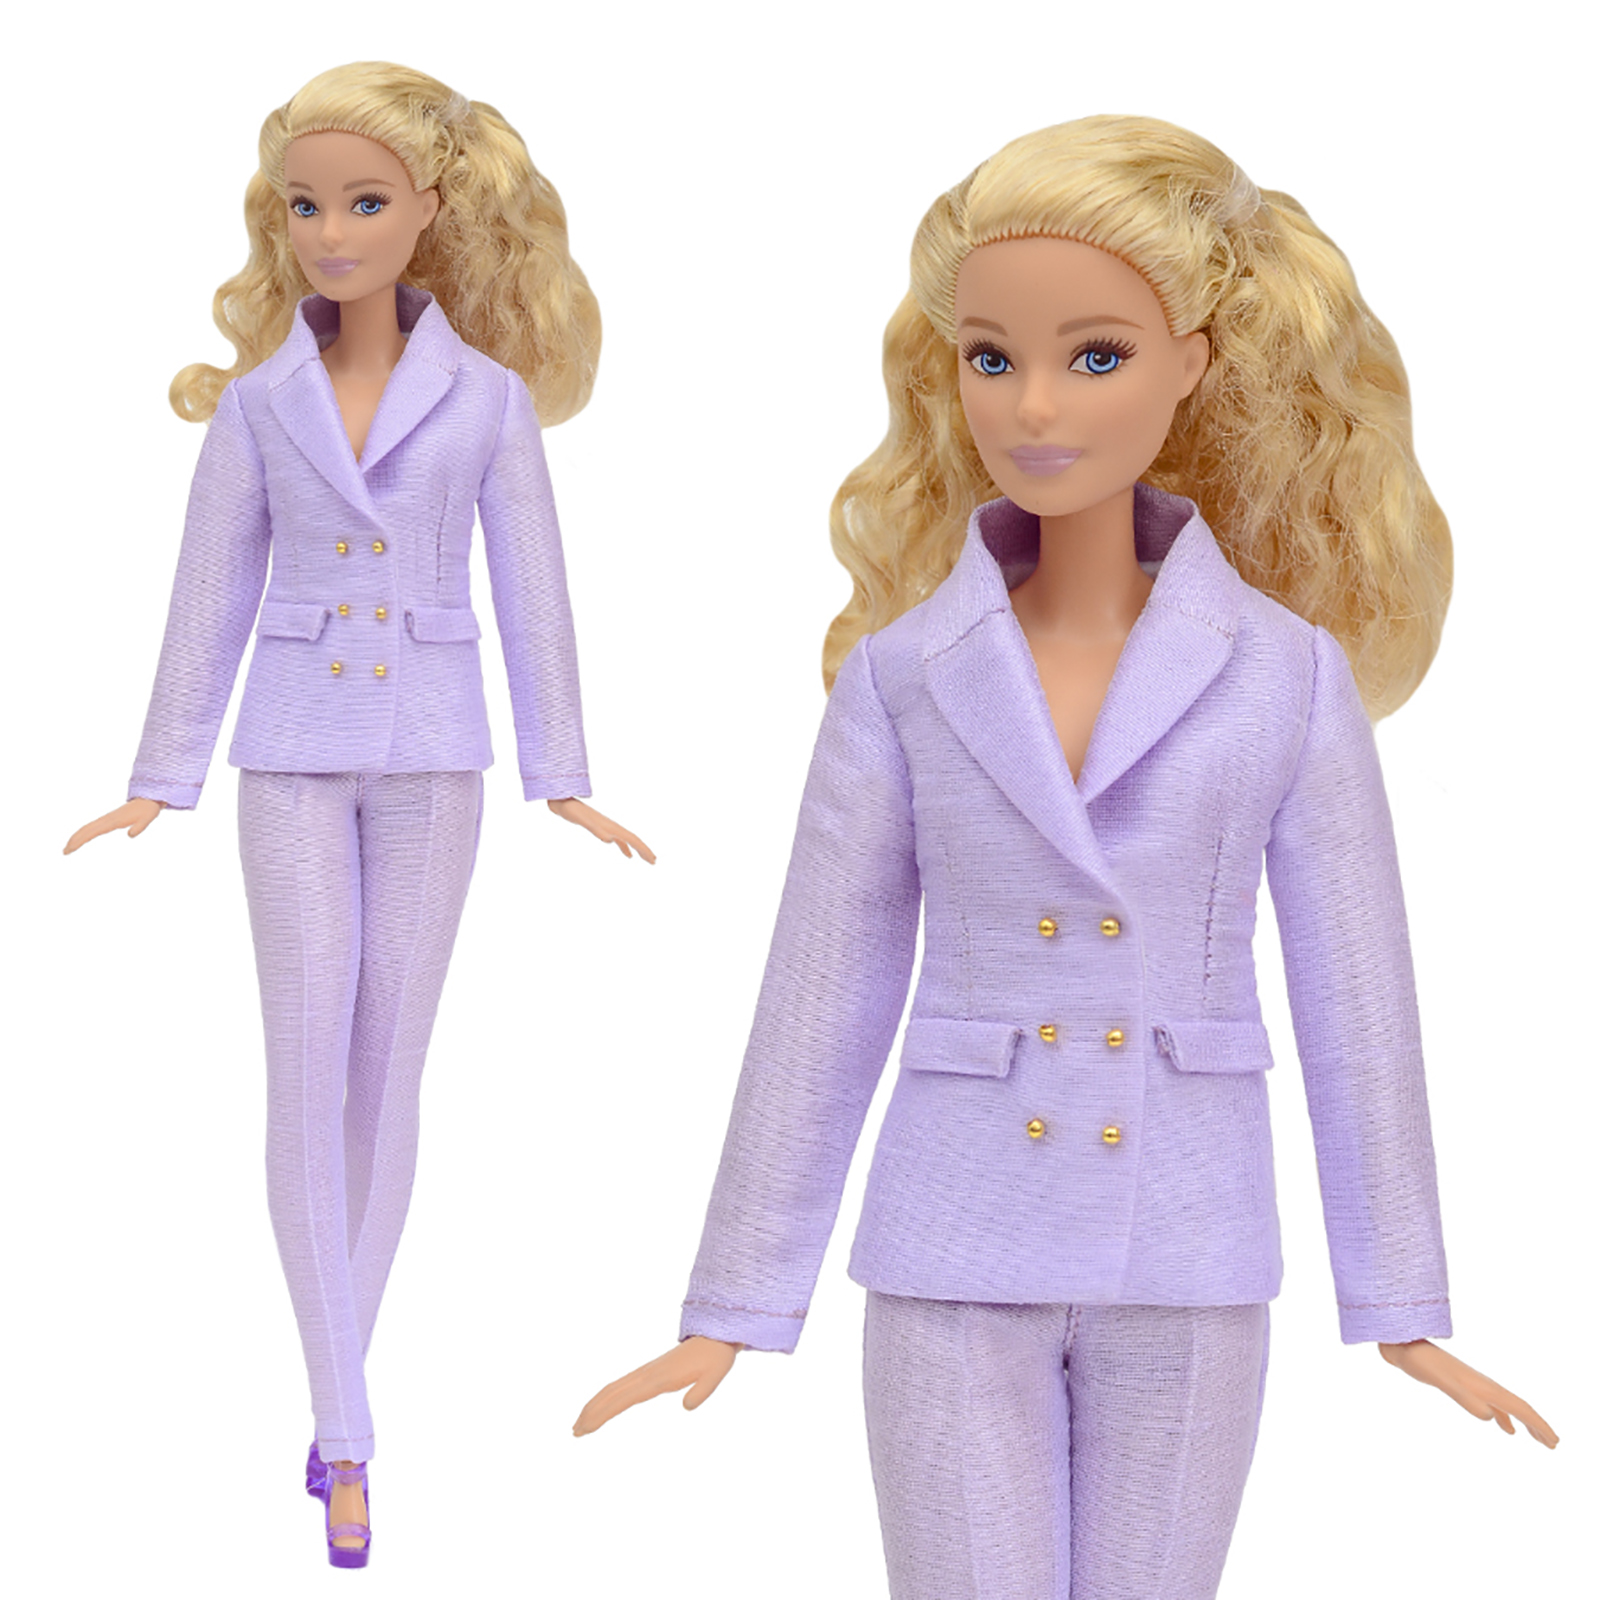 Шелковый брючный костюм Эленприв Фиолетовый для куклы 29 см типа Барби FA-011-11 - фото 2